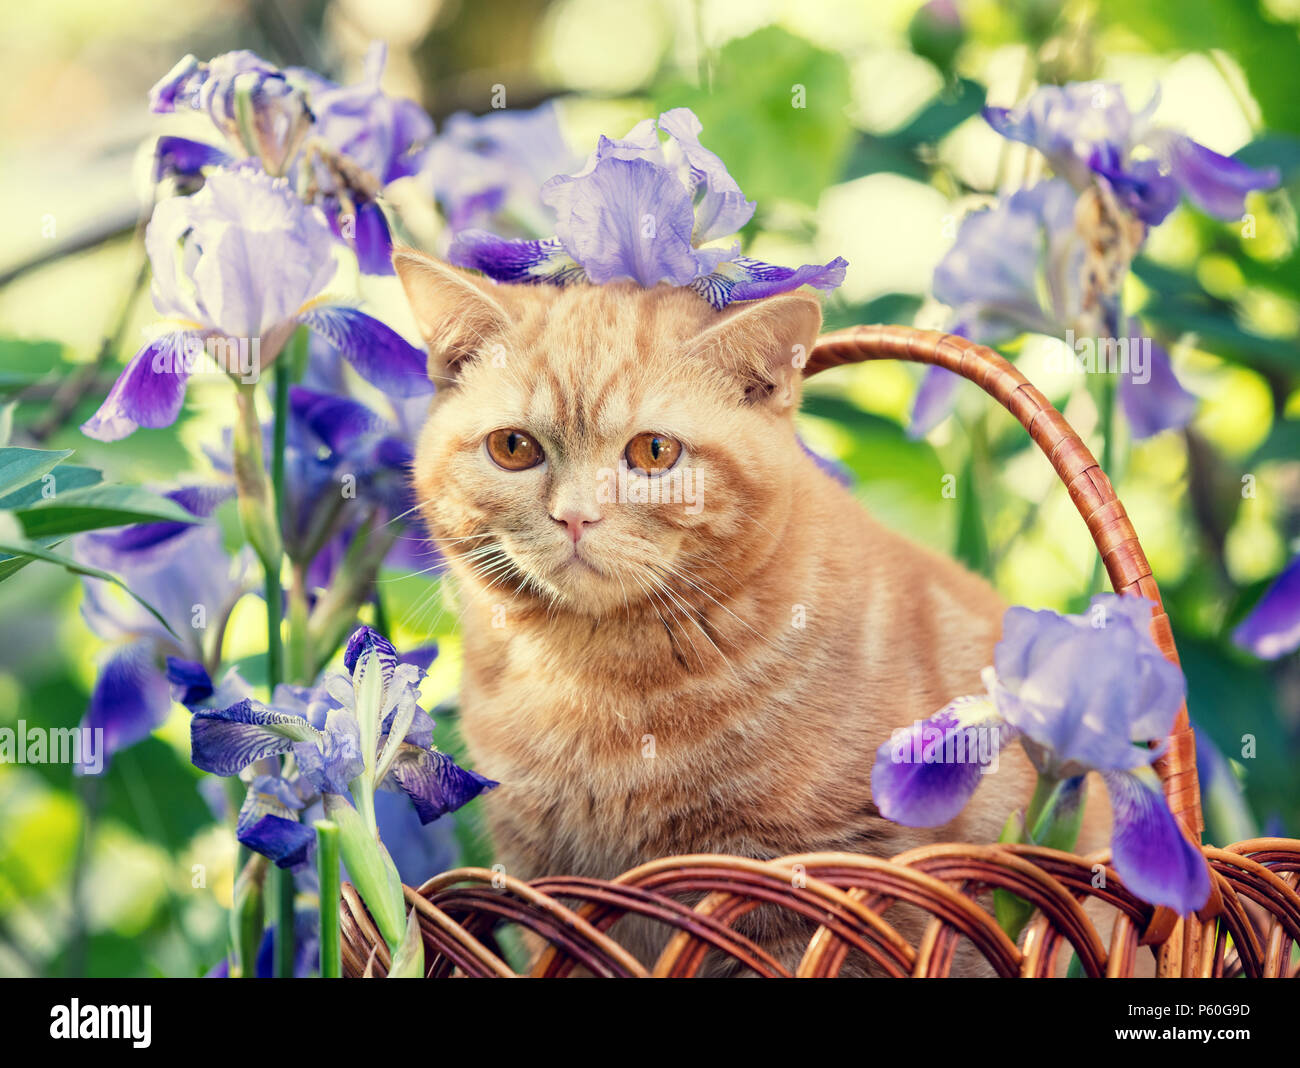 Jengibre lindo gatito sentado en flores de iris en el césped Foto de stock